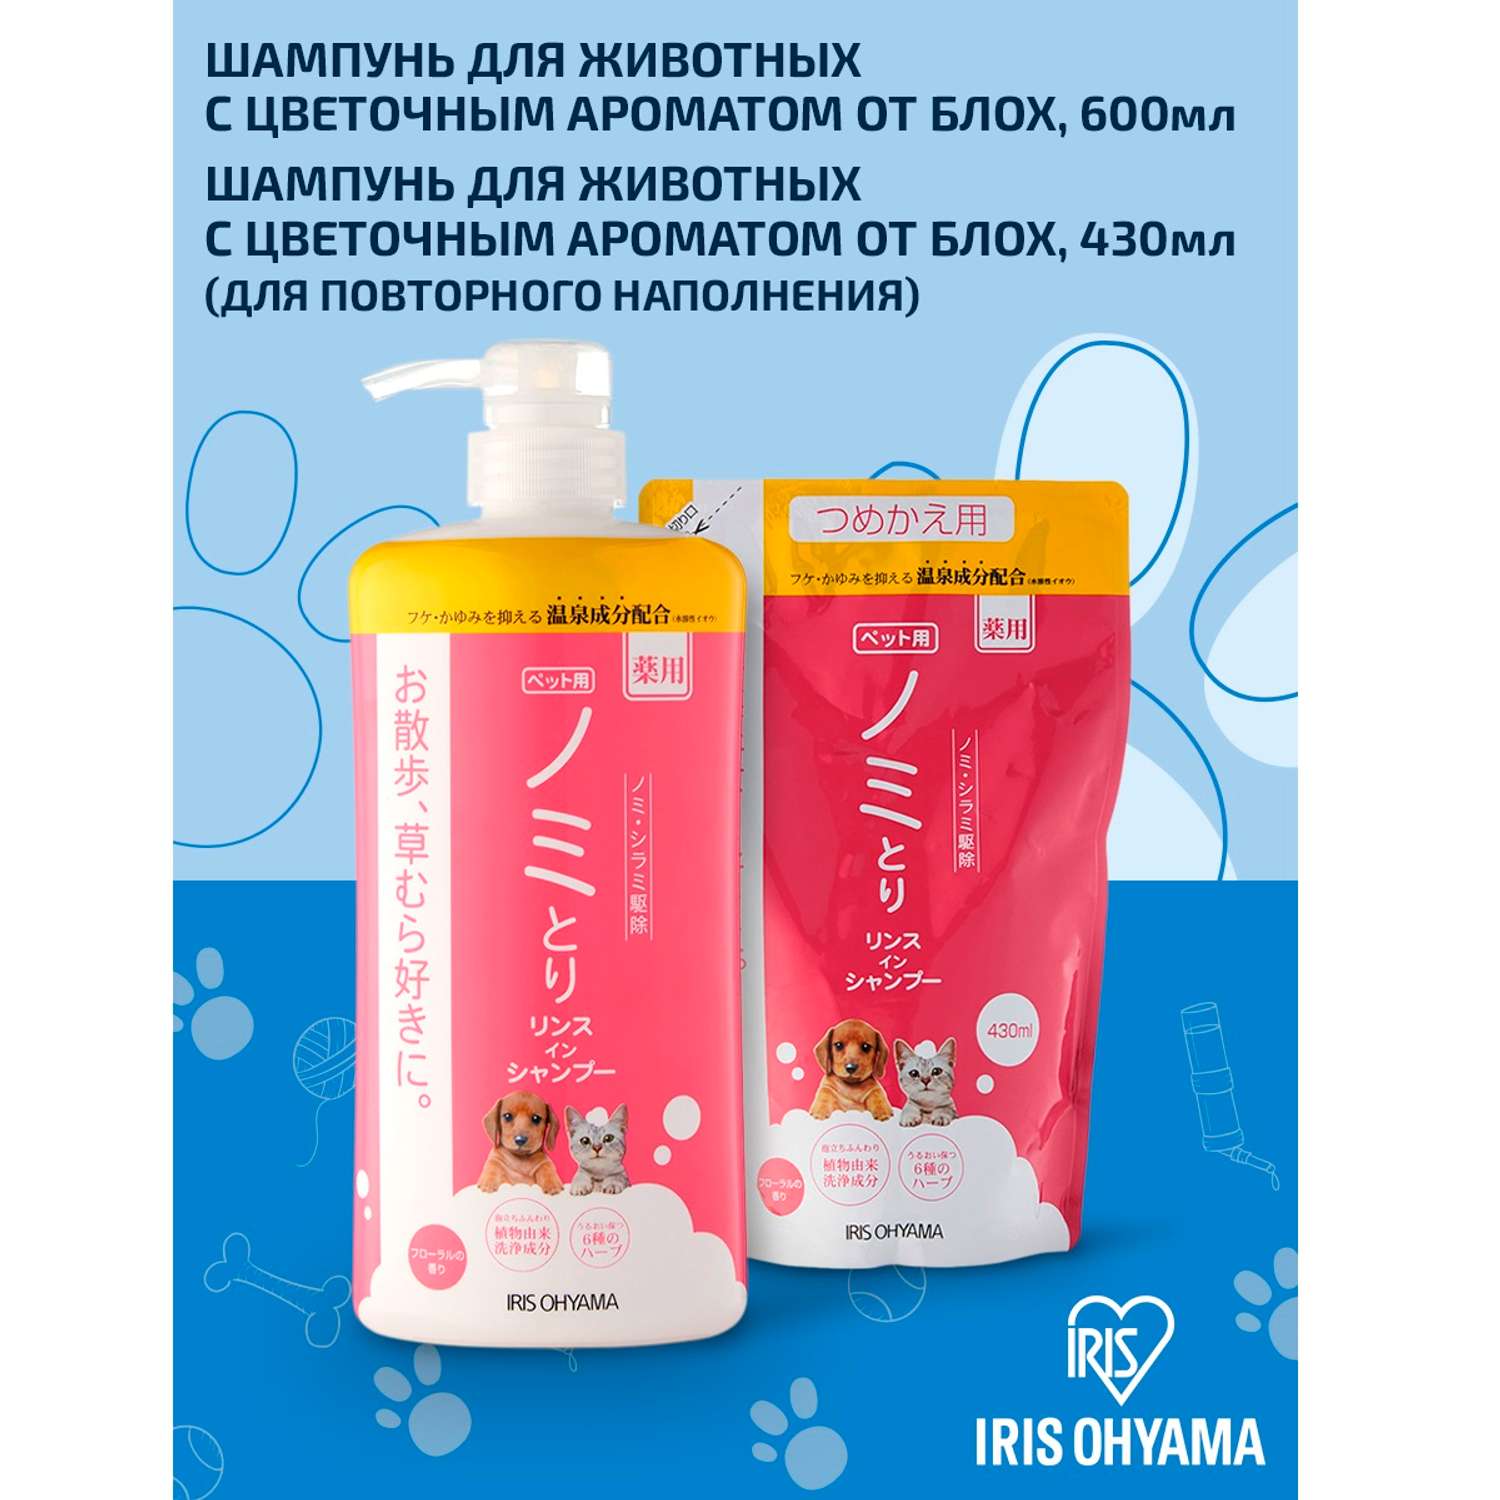 Шампунь для животных IRIS OHYAMA  с цветочным ароматом от блох 600 мл - фото 7